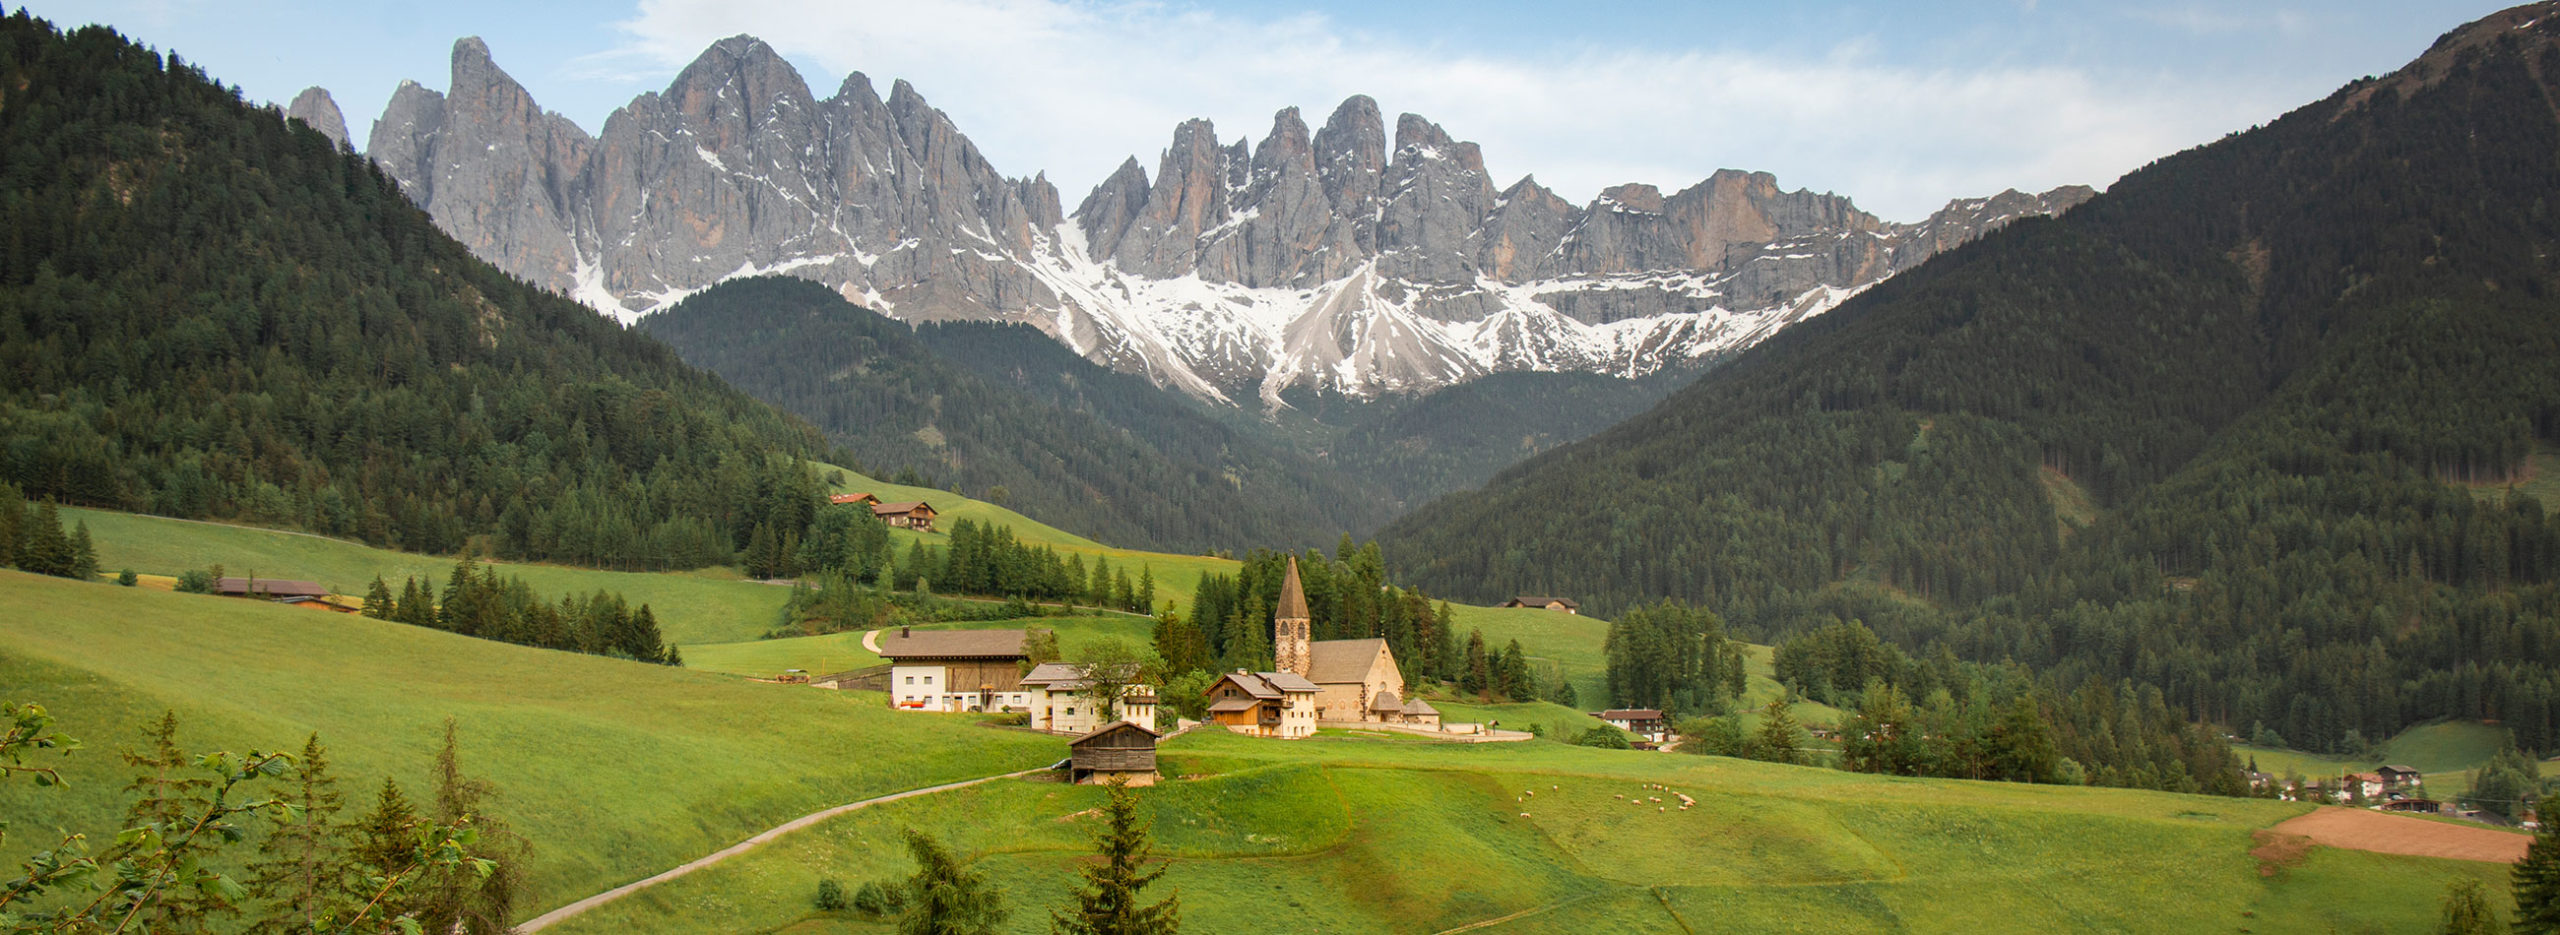 Santa Magdalena, Val di Funes, Dolomites, Italie / St. Magdalena, Val di Funes, Dolomites, Italy